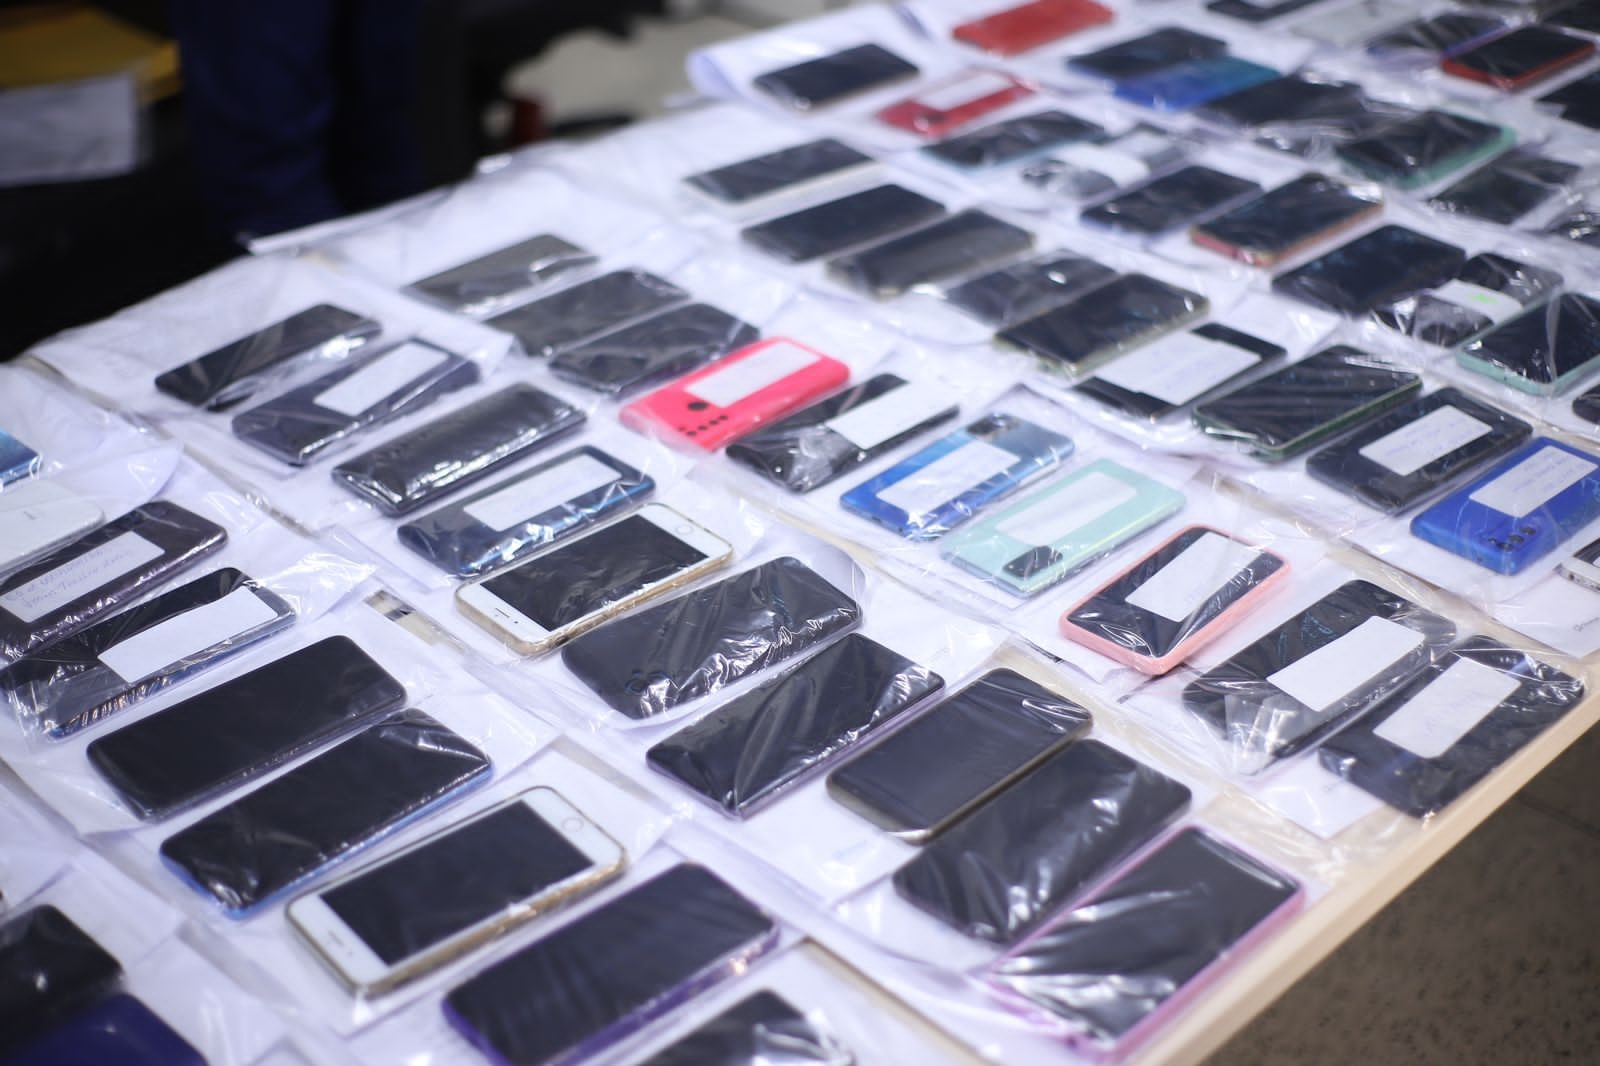 Secretaria de segurança fará devolução de mais 700 celulares em Teresina; veja lista de convocados